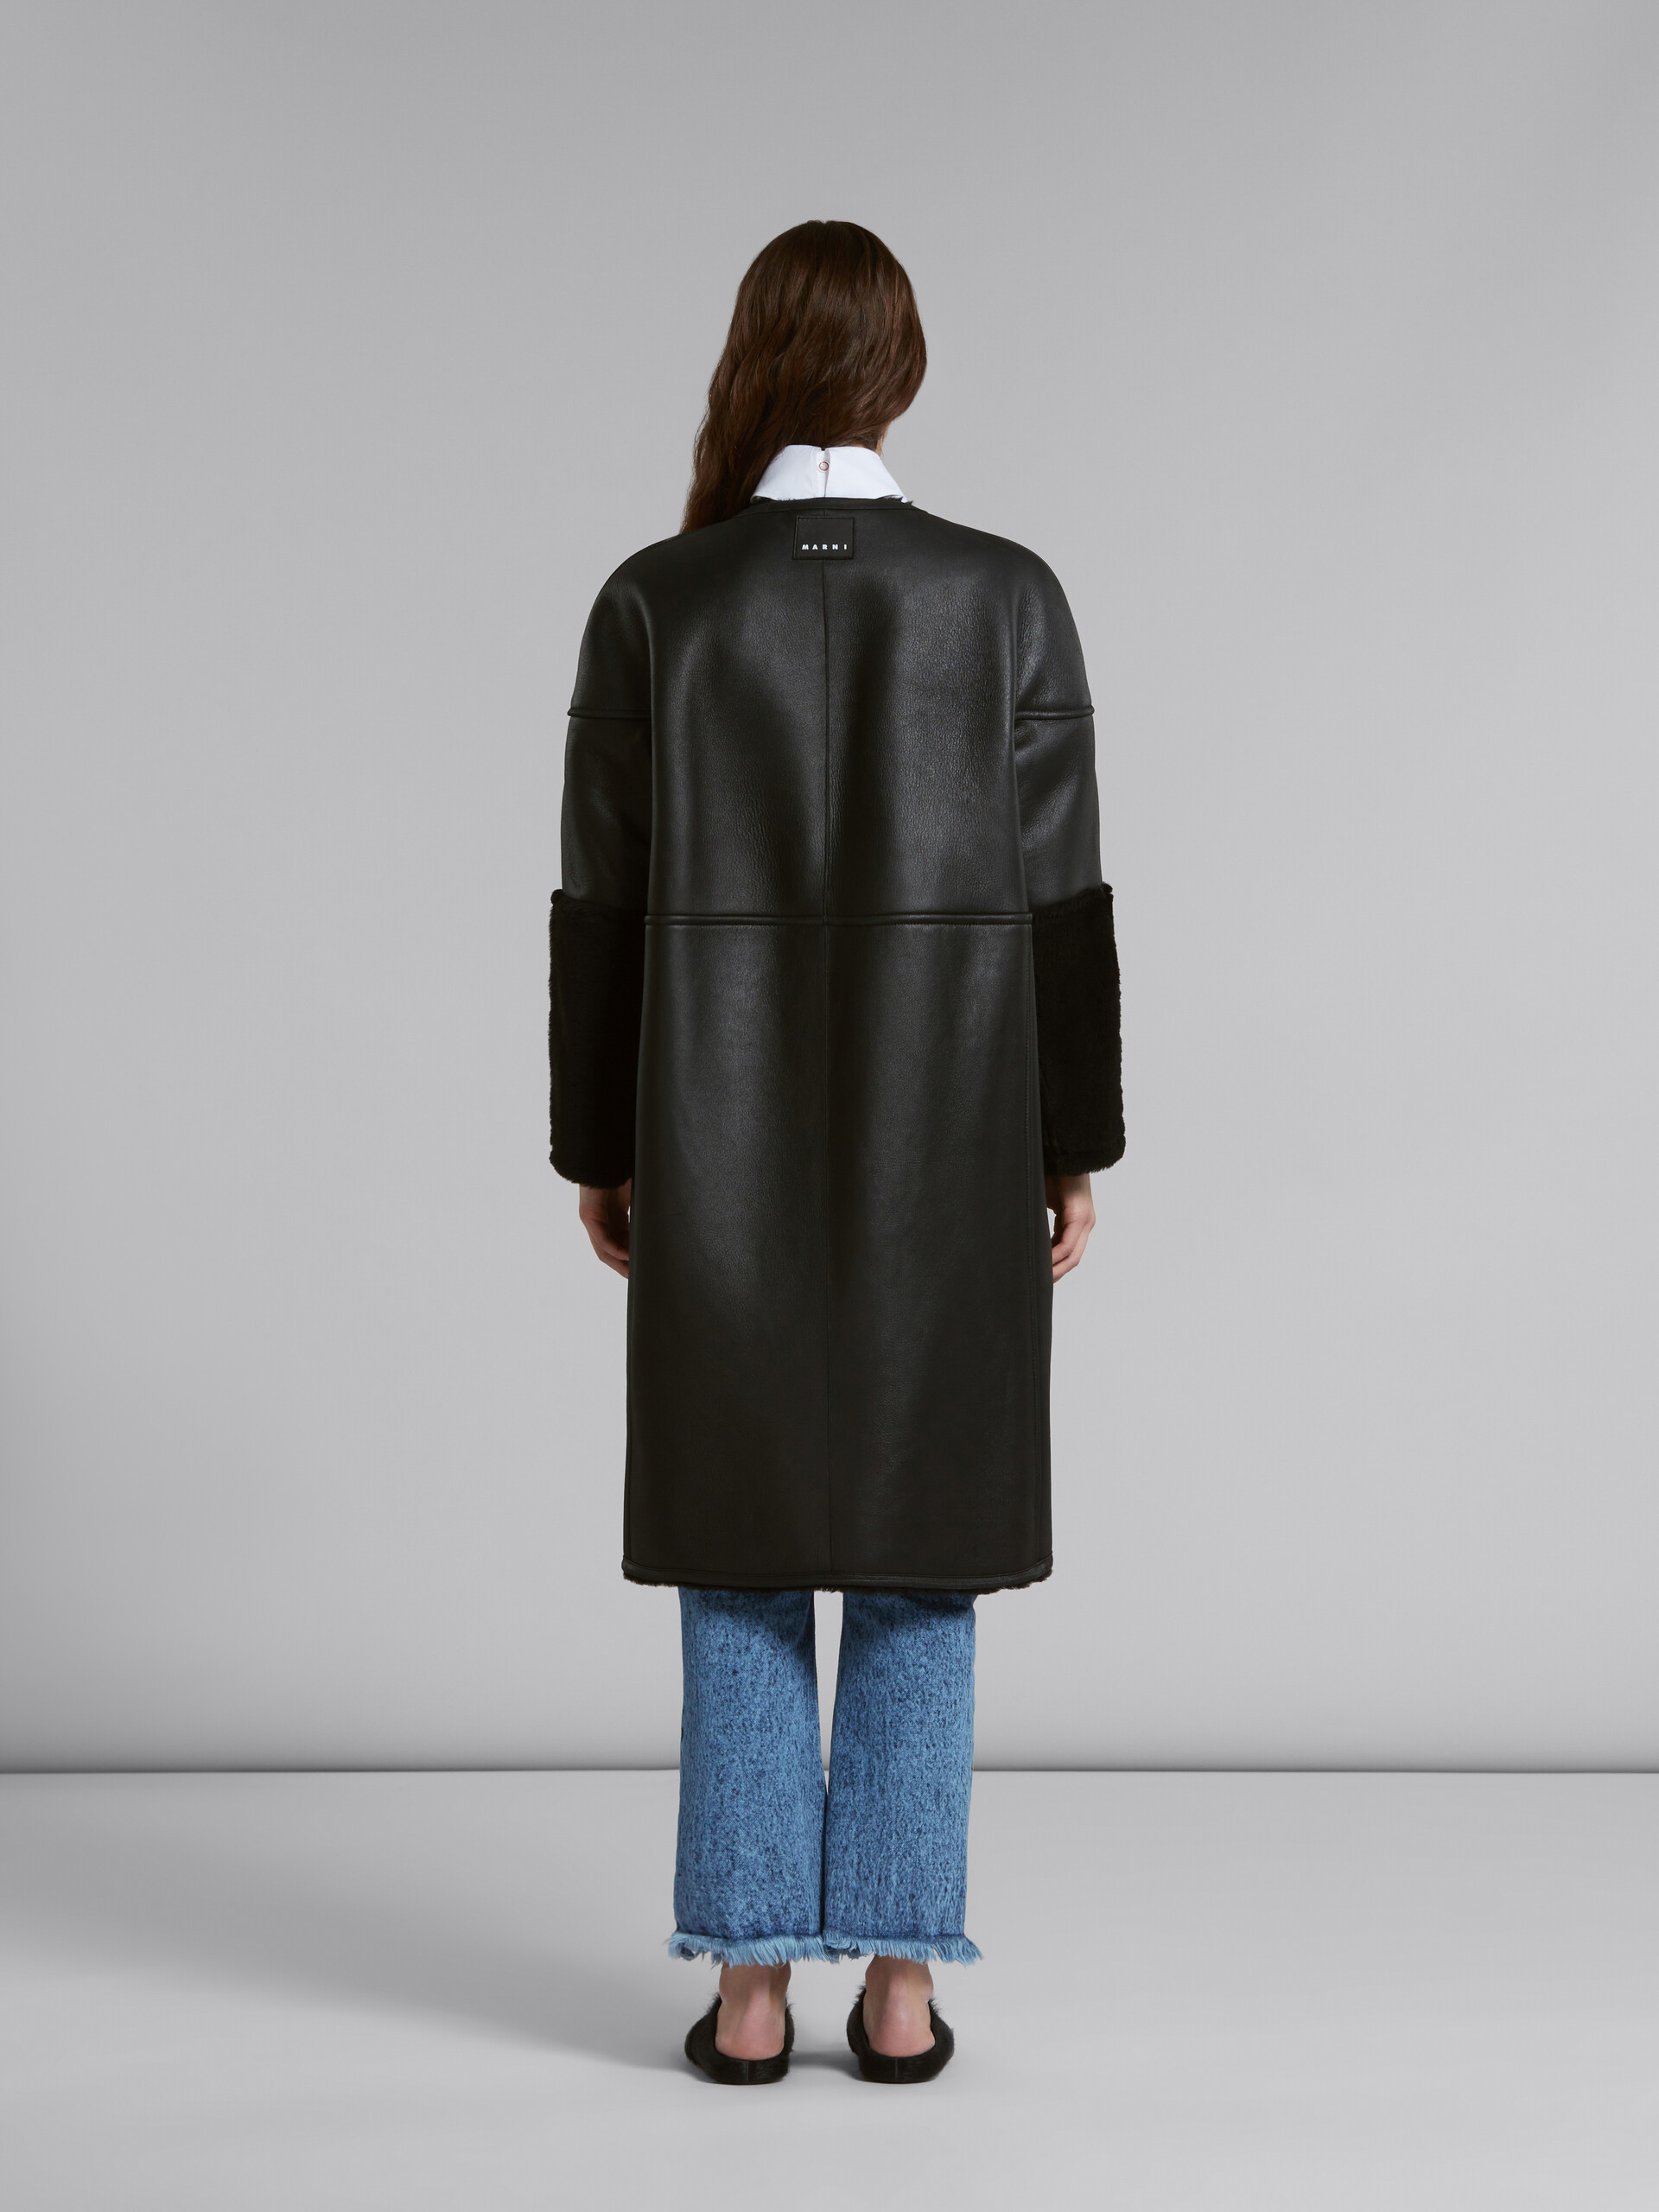 Manteau réversible en shearling noir - Vestes - Image 3